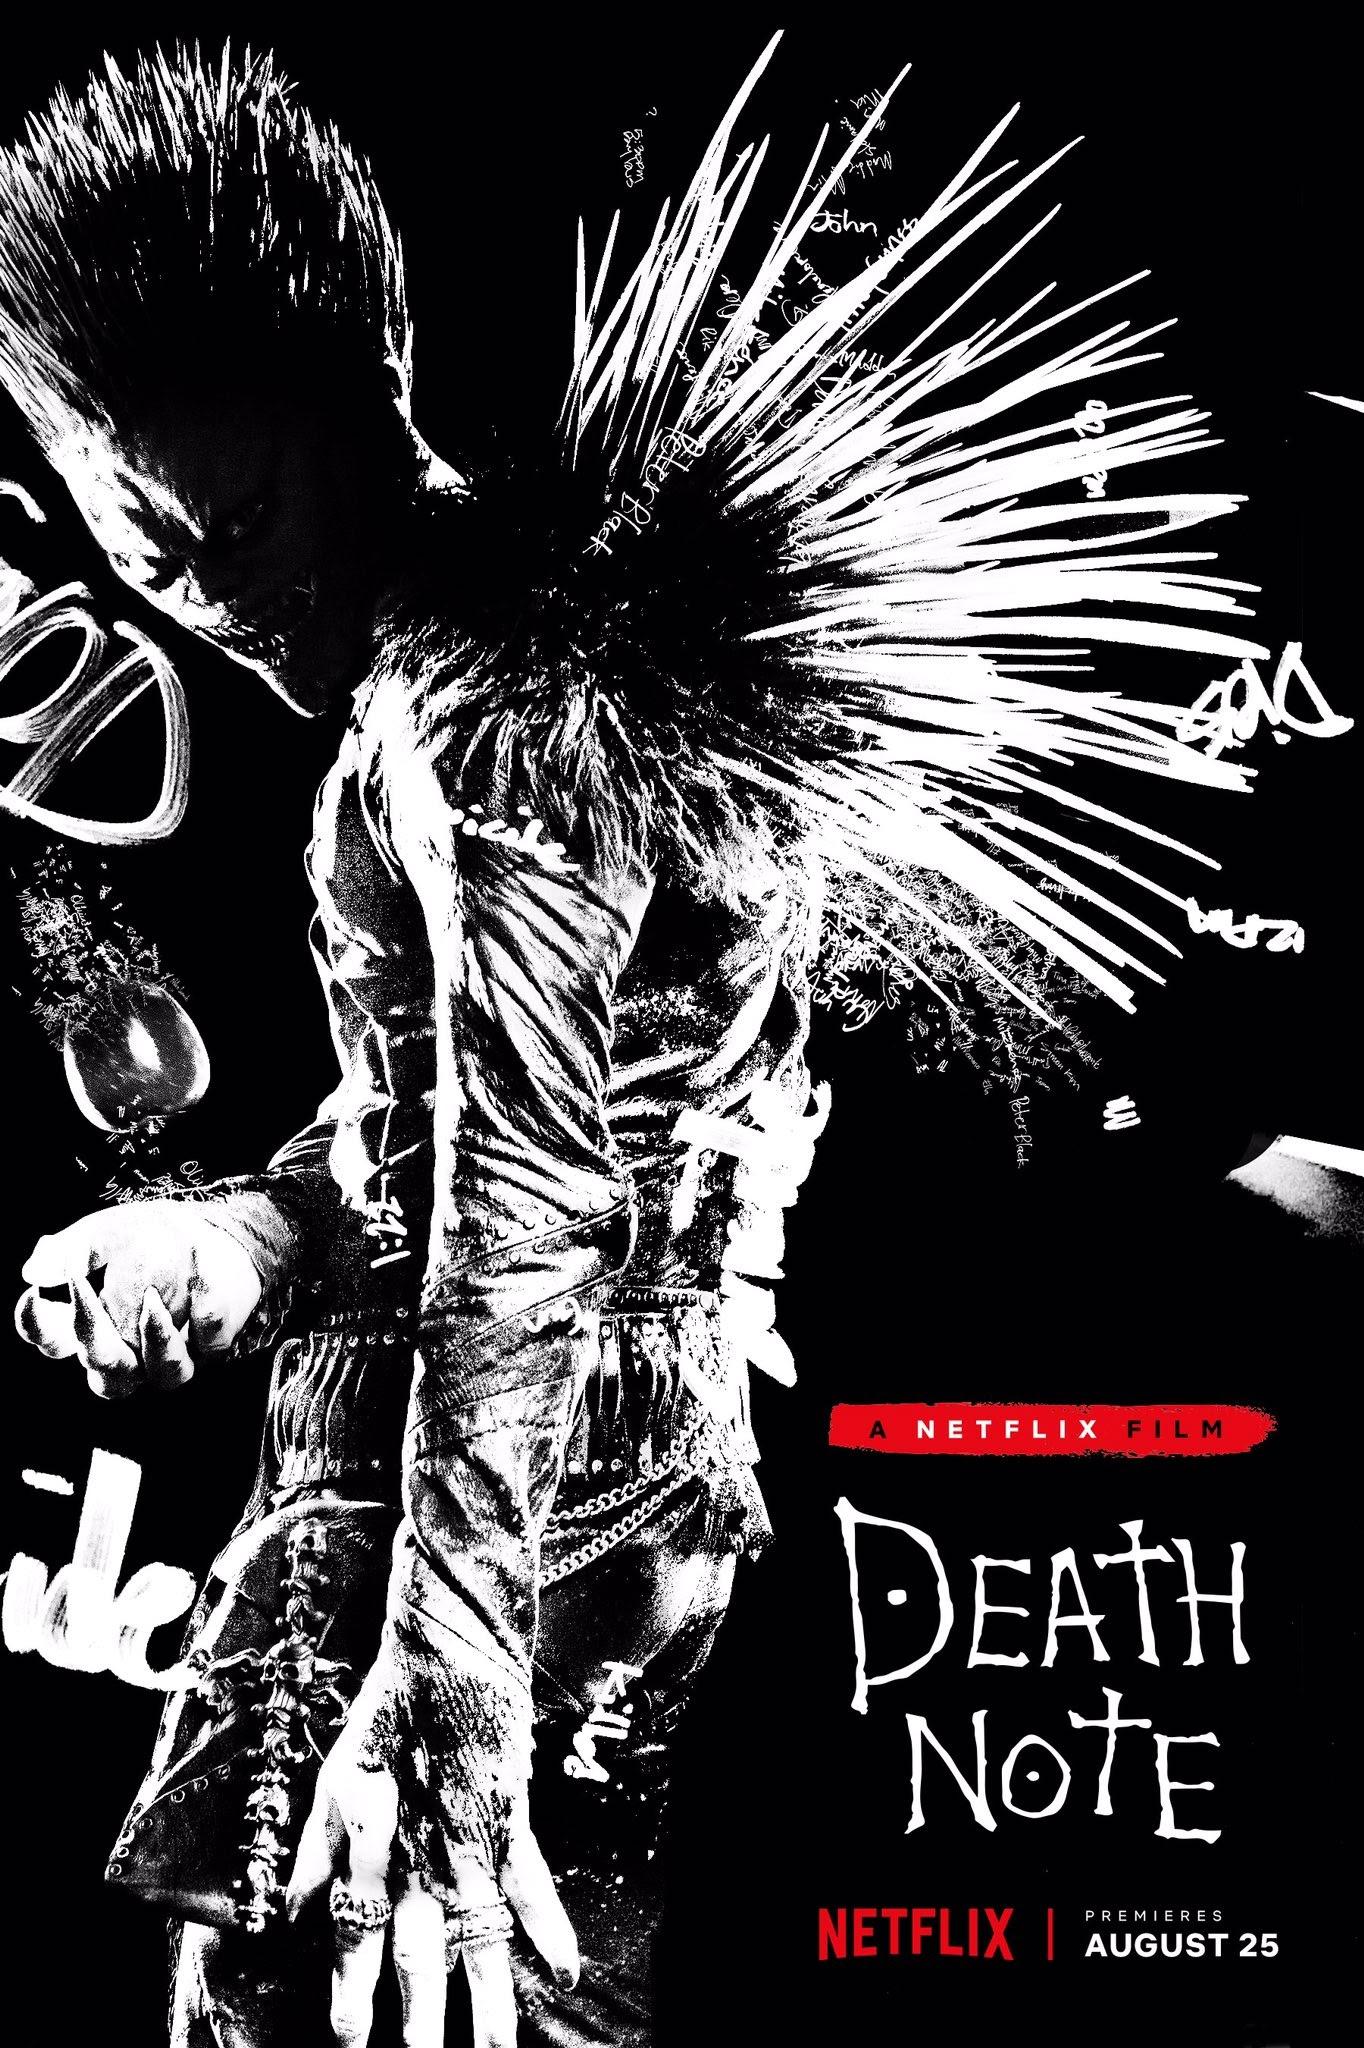 death note 2017 film - Netflix Film iler Death Note G Netflix August 25